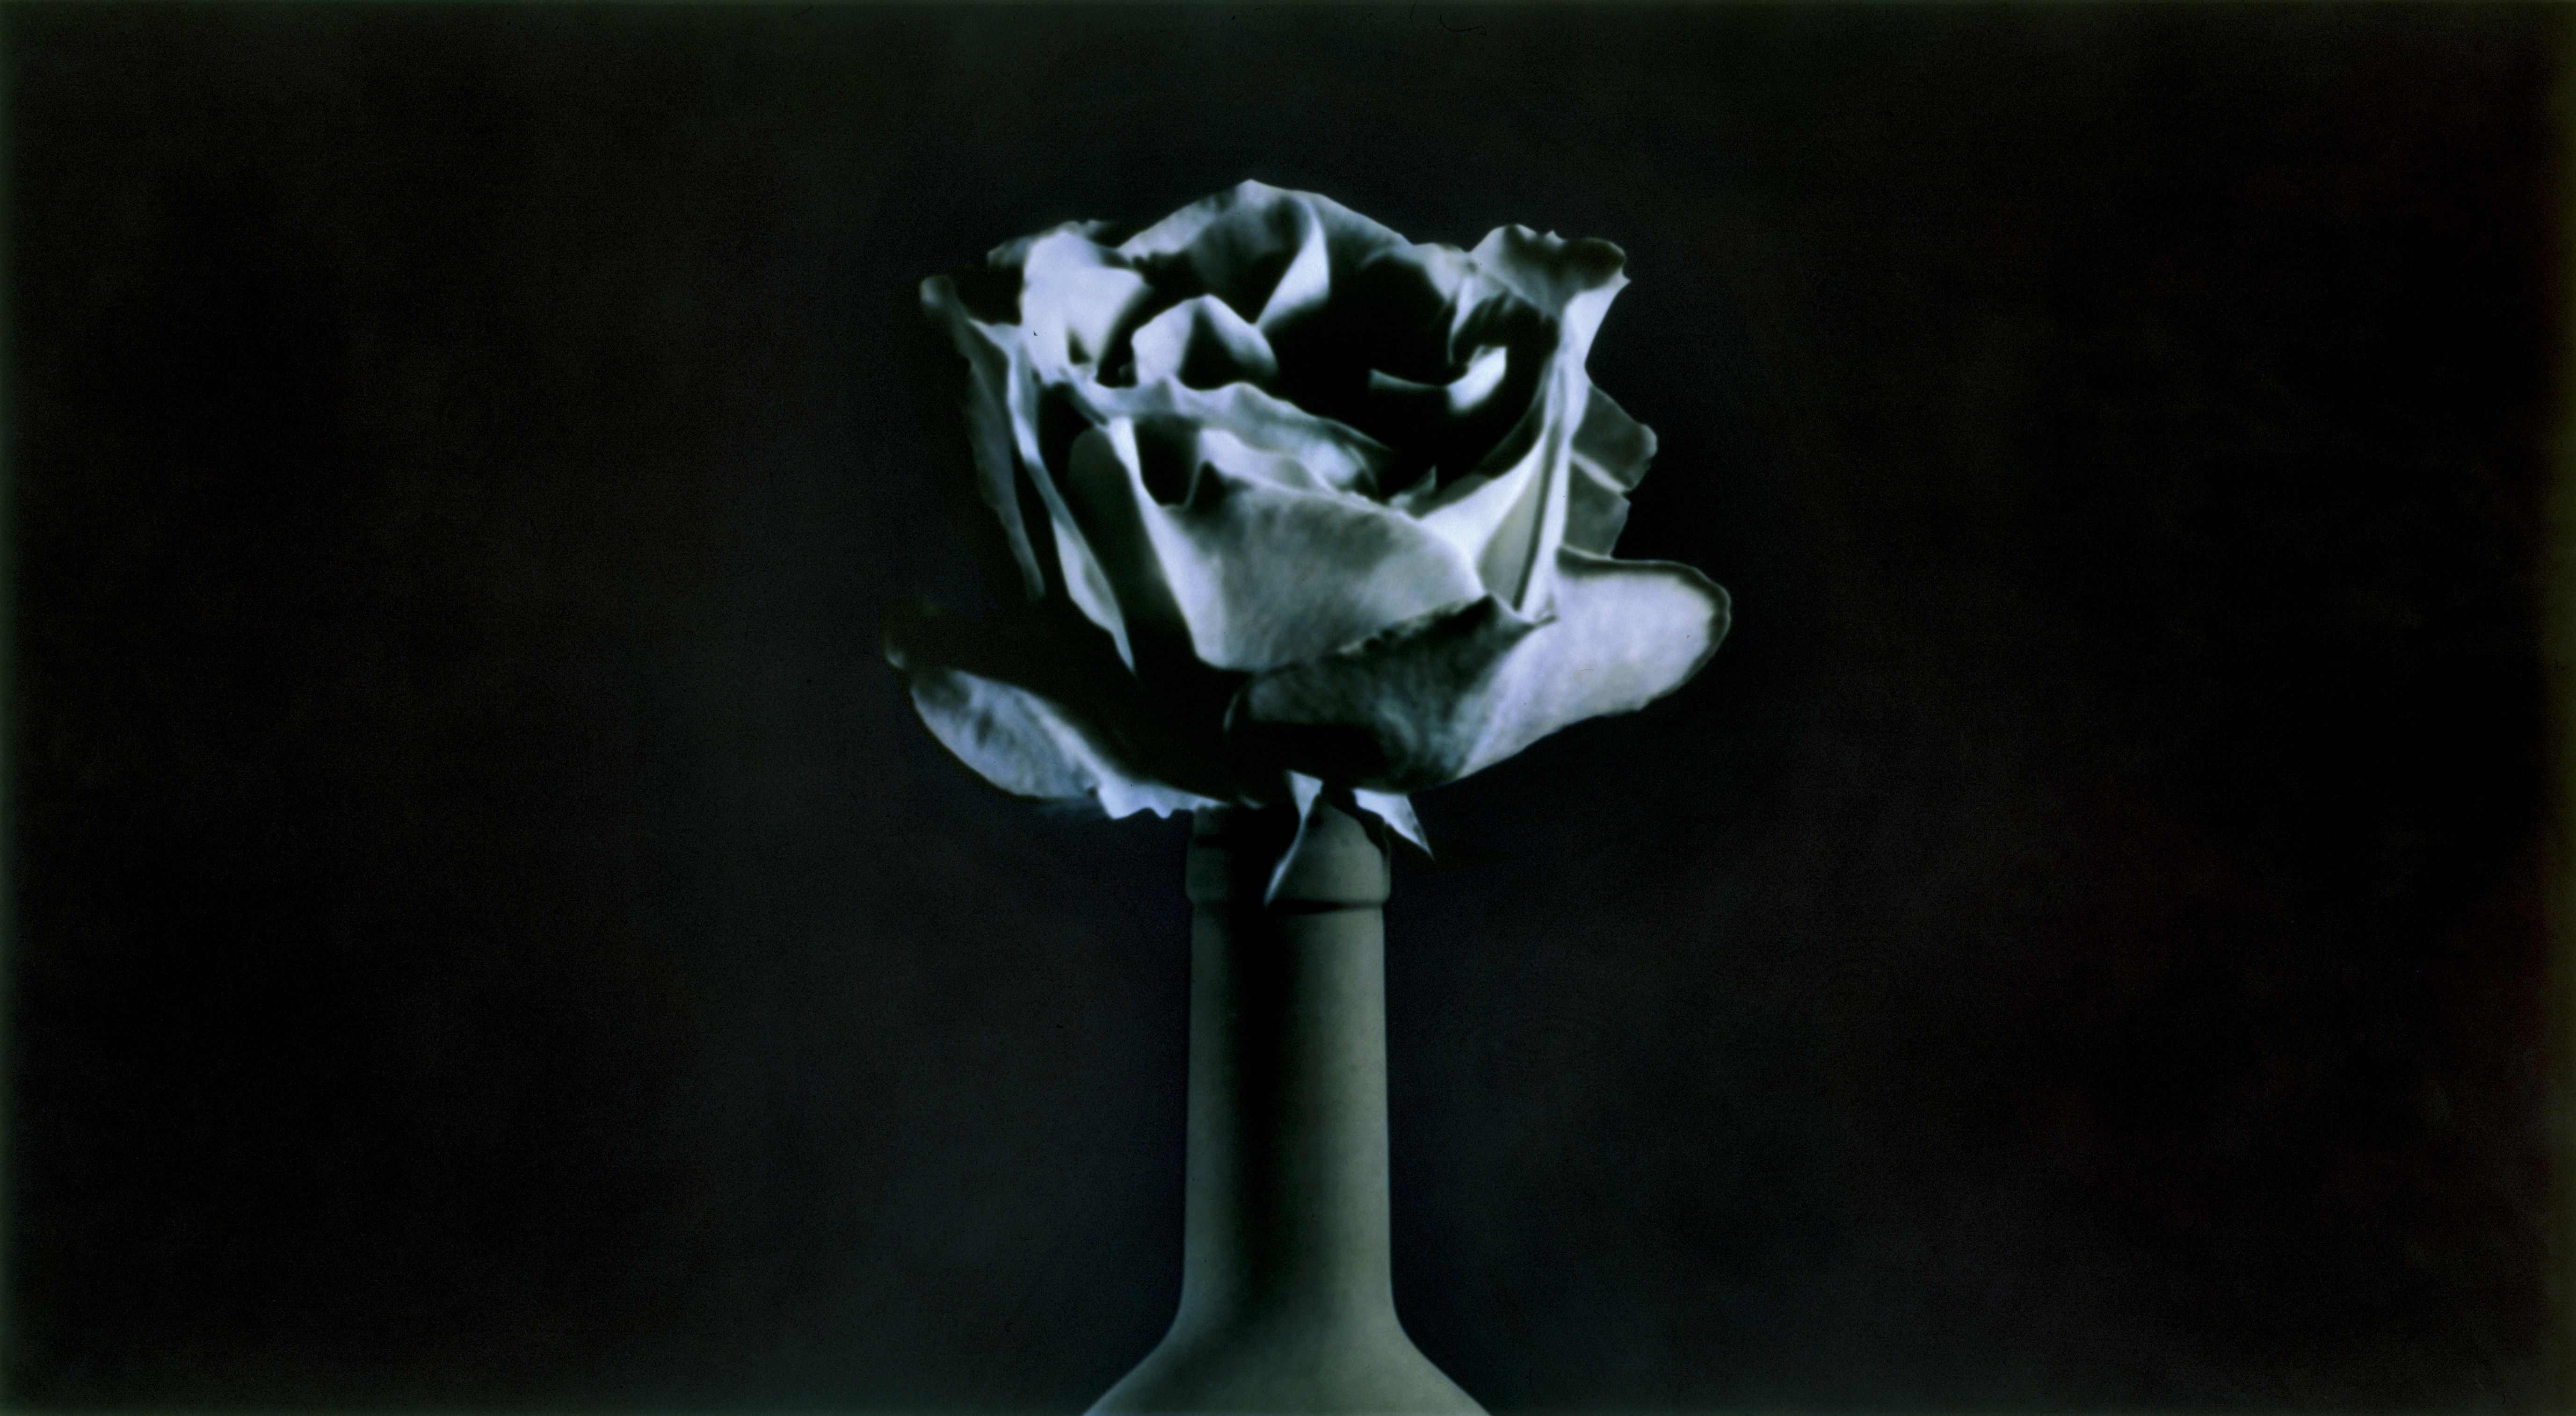 Paolo Mussat Sartor, rosa blu, 1991-1992. Pigmenti colorati su stampa fotografica b/n al bromuro d’argento (124 x 224cm). Courtesy l’artista e Galleria Gracis.